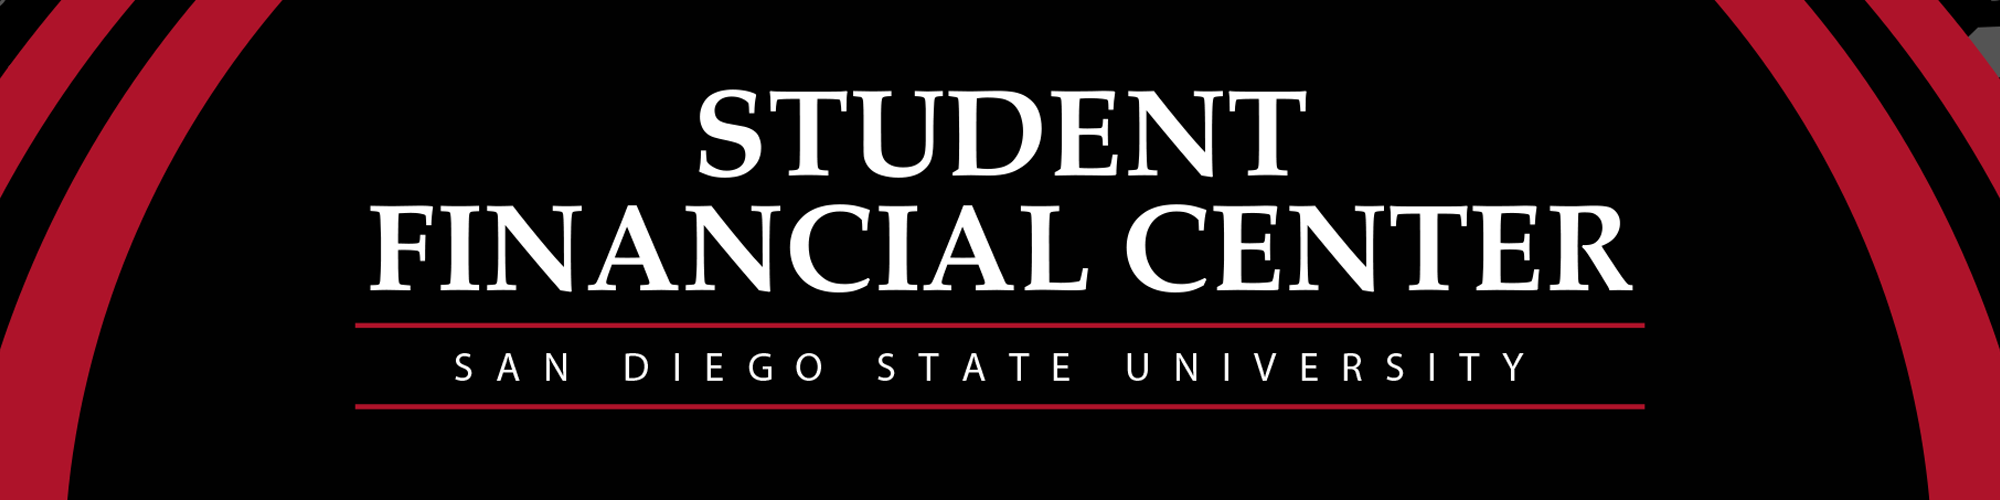 student financial center sdsu